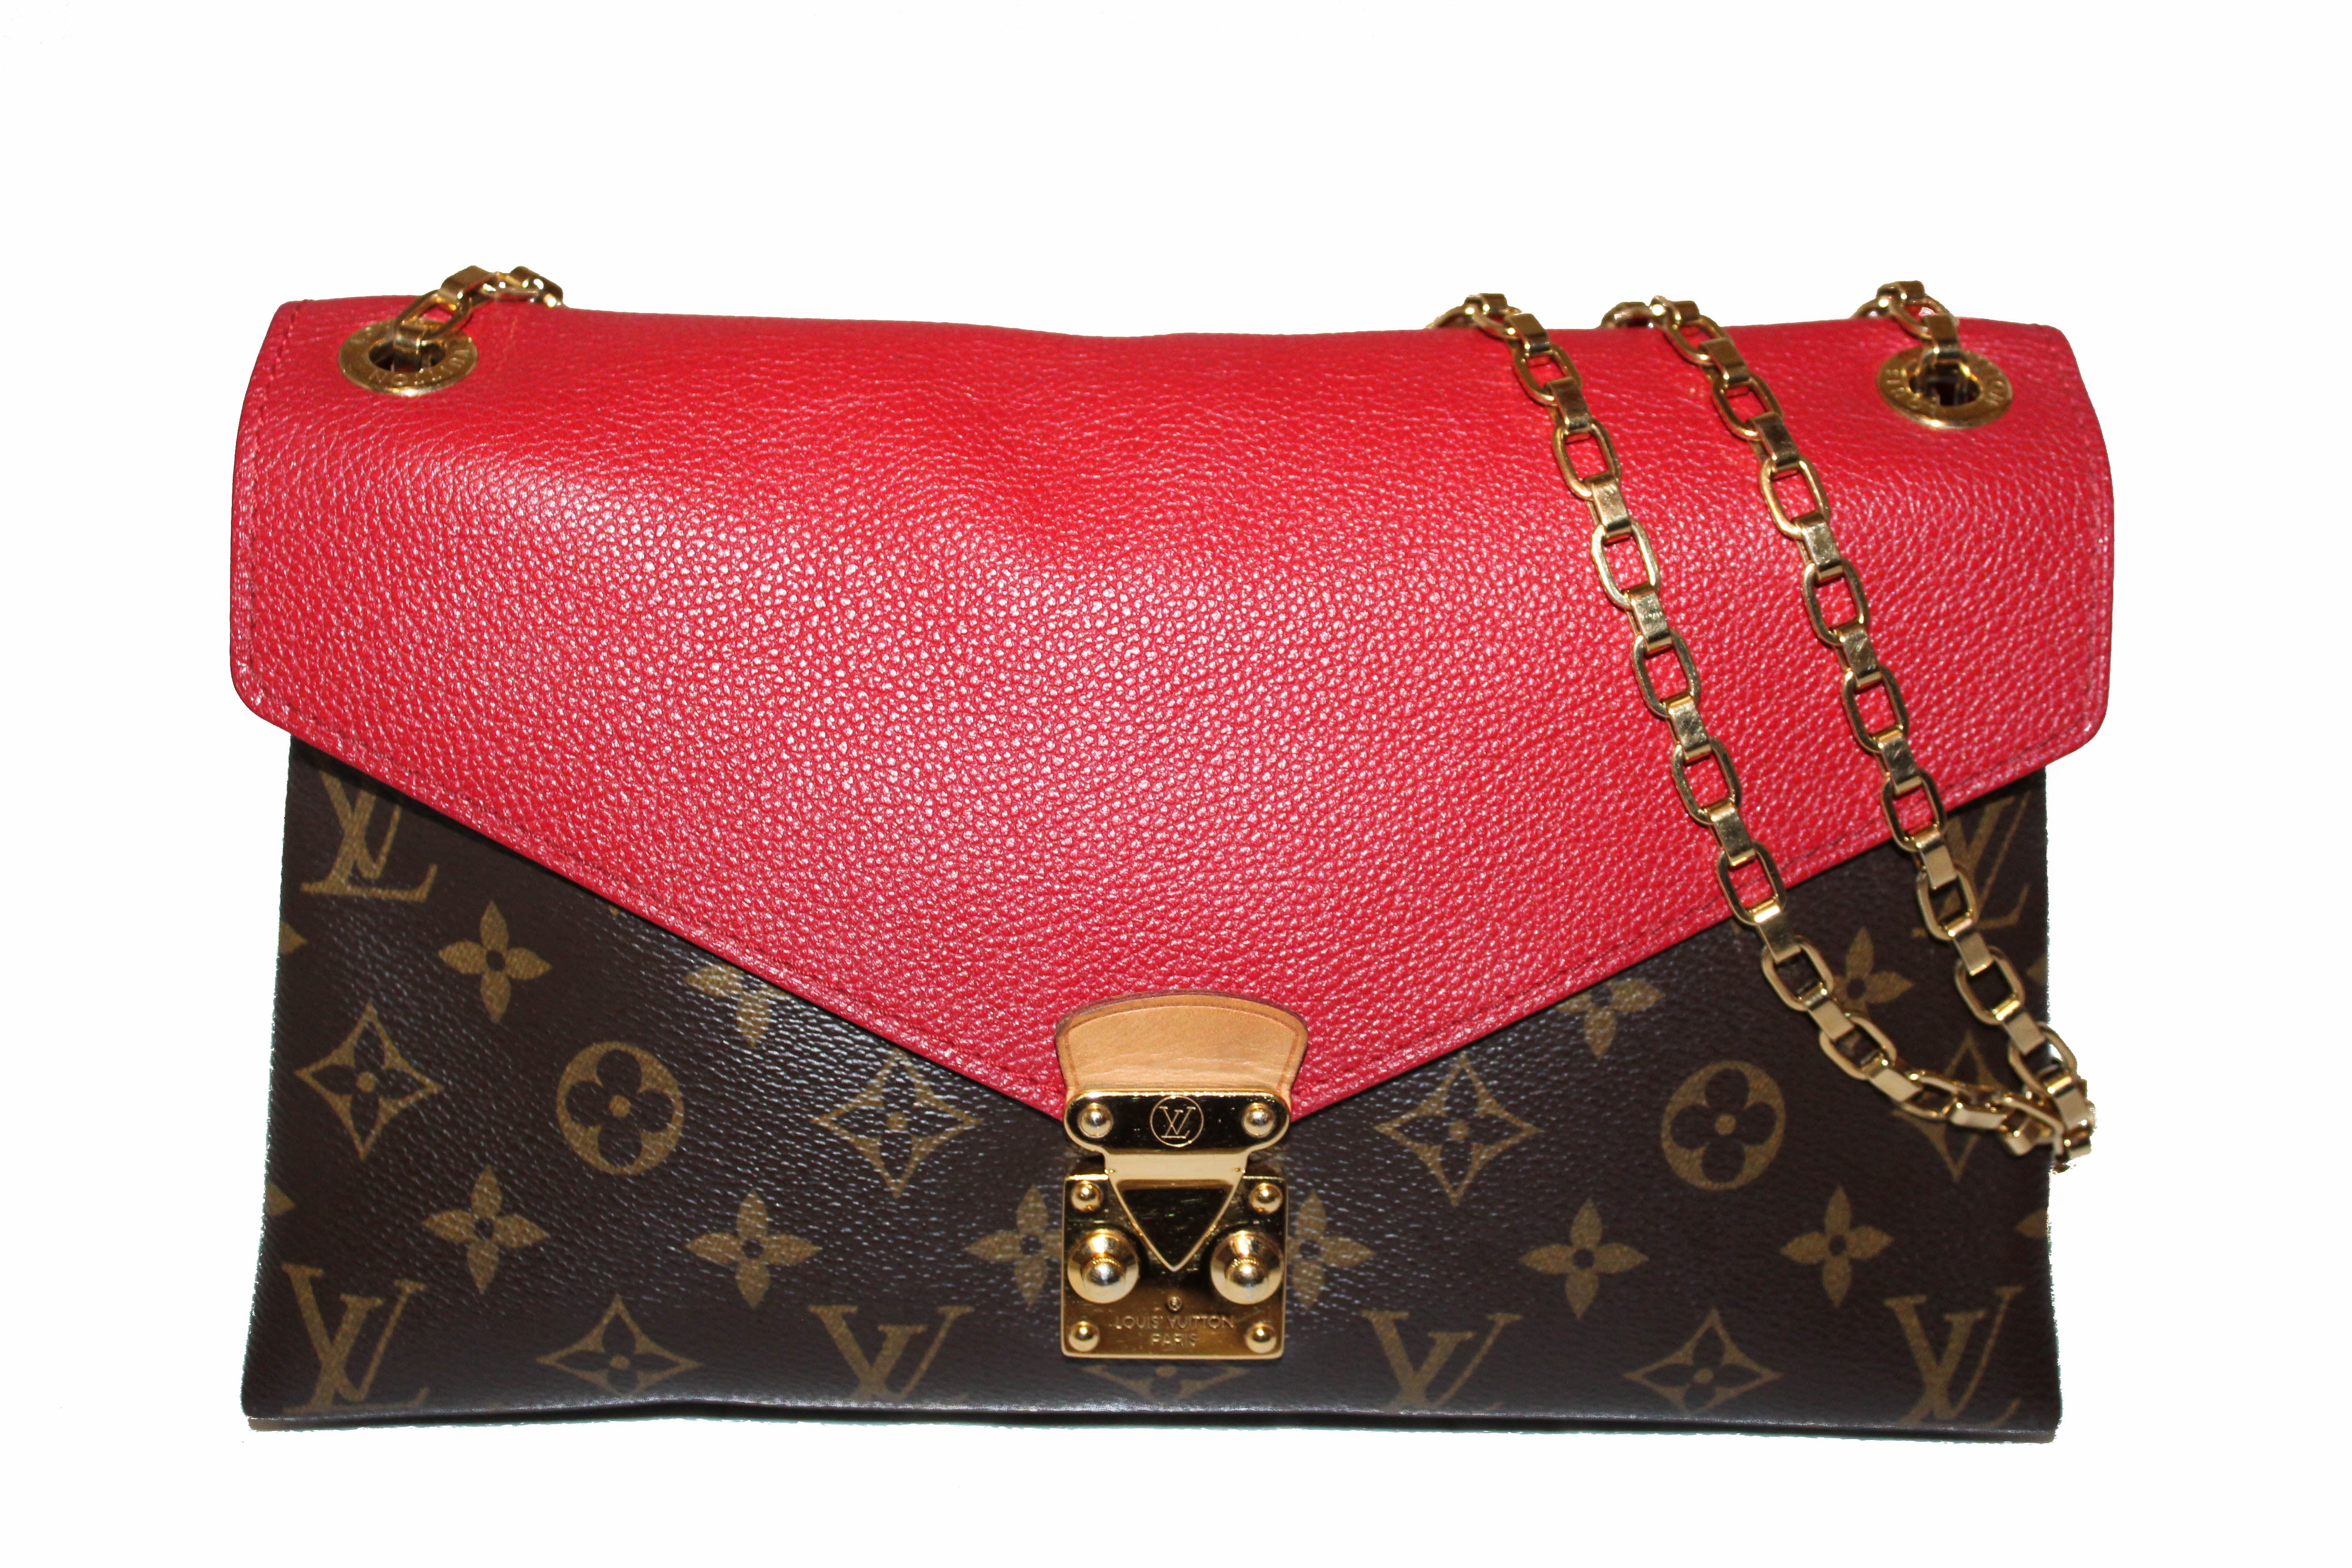 Authentic Louis Vuitton Red Monogram Pallas Chain Shoulder Bag Paris Station Shop 